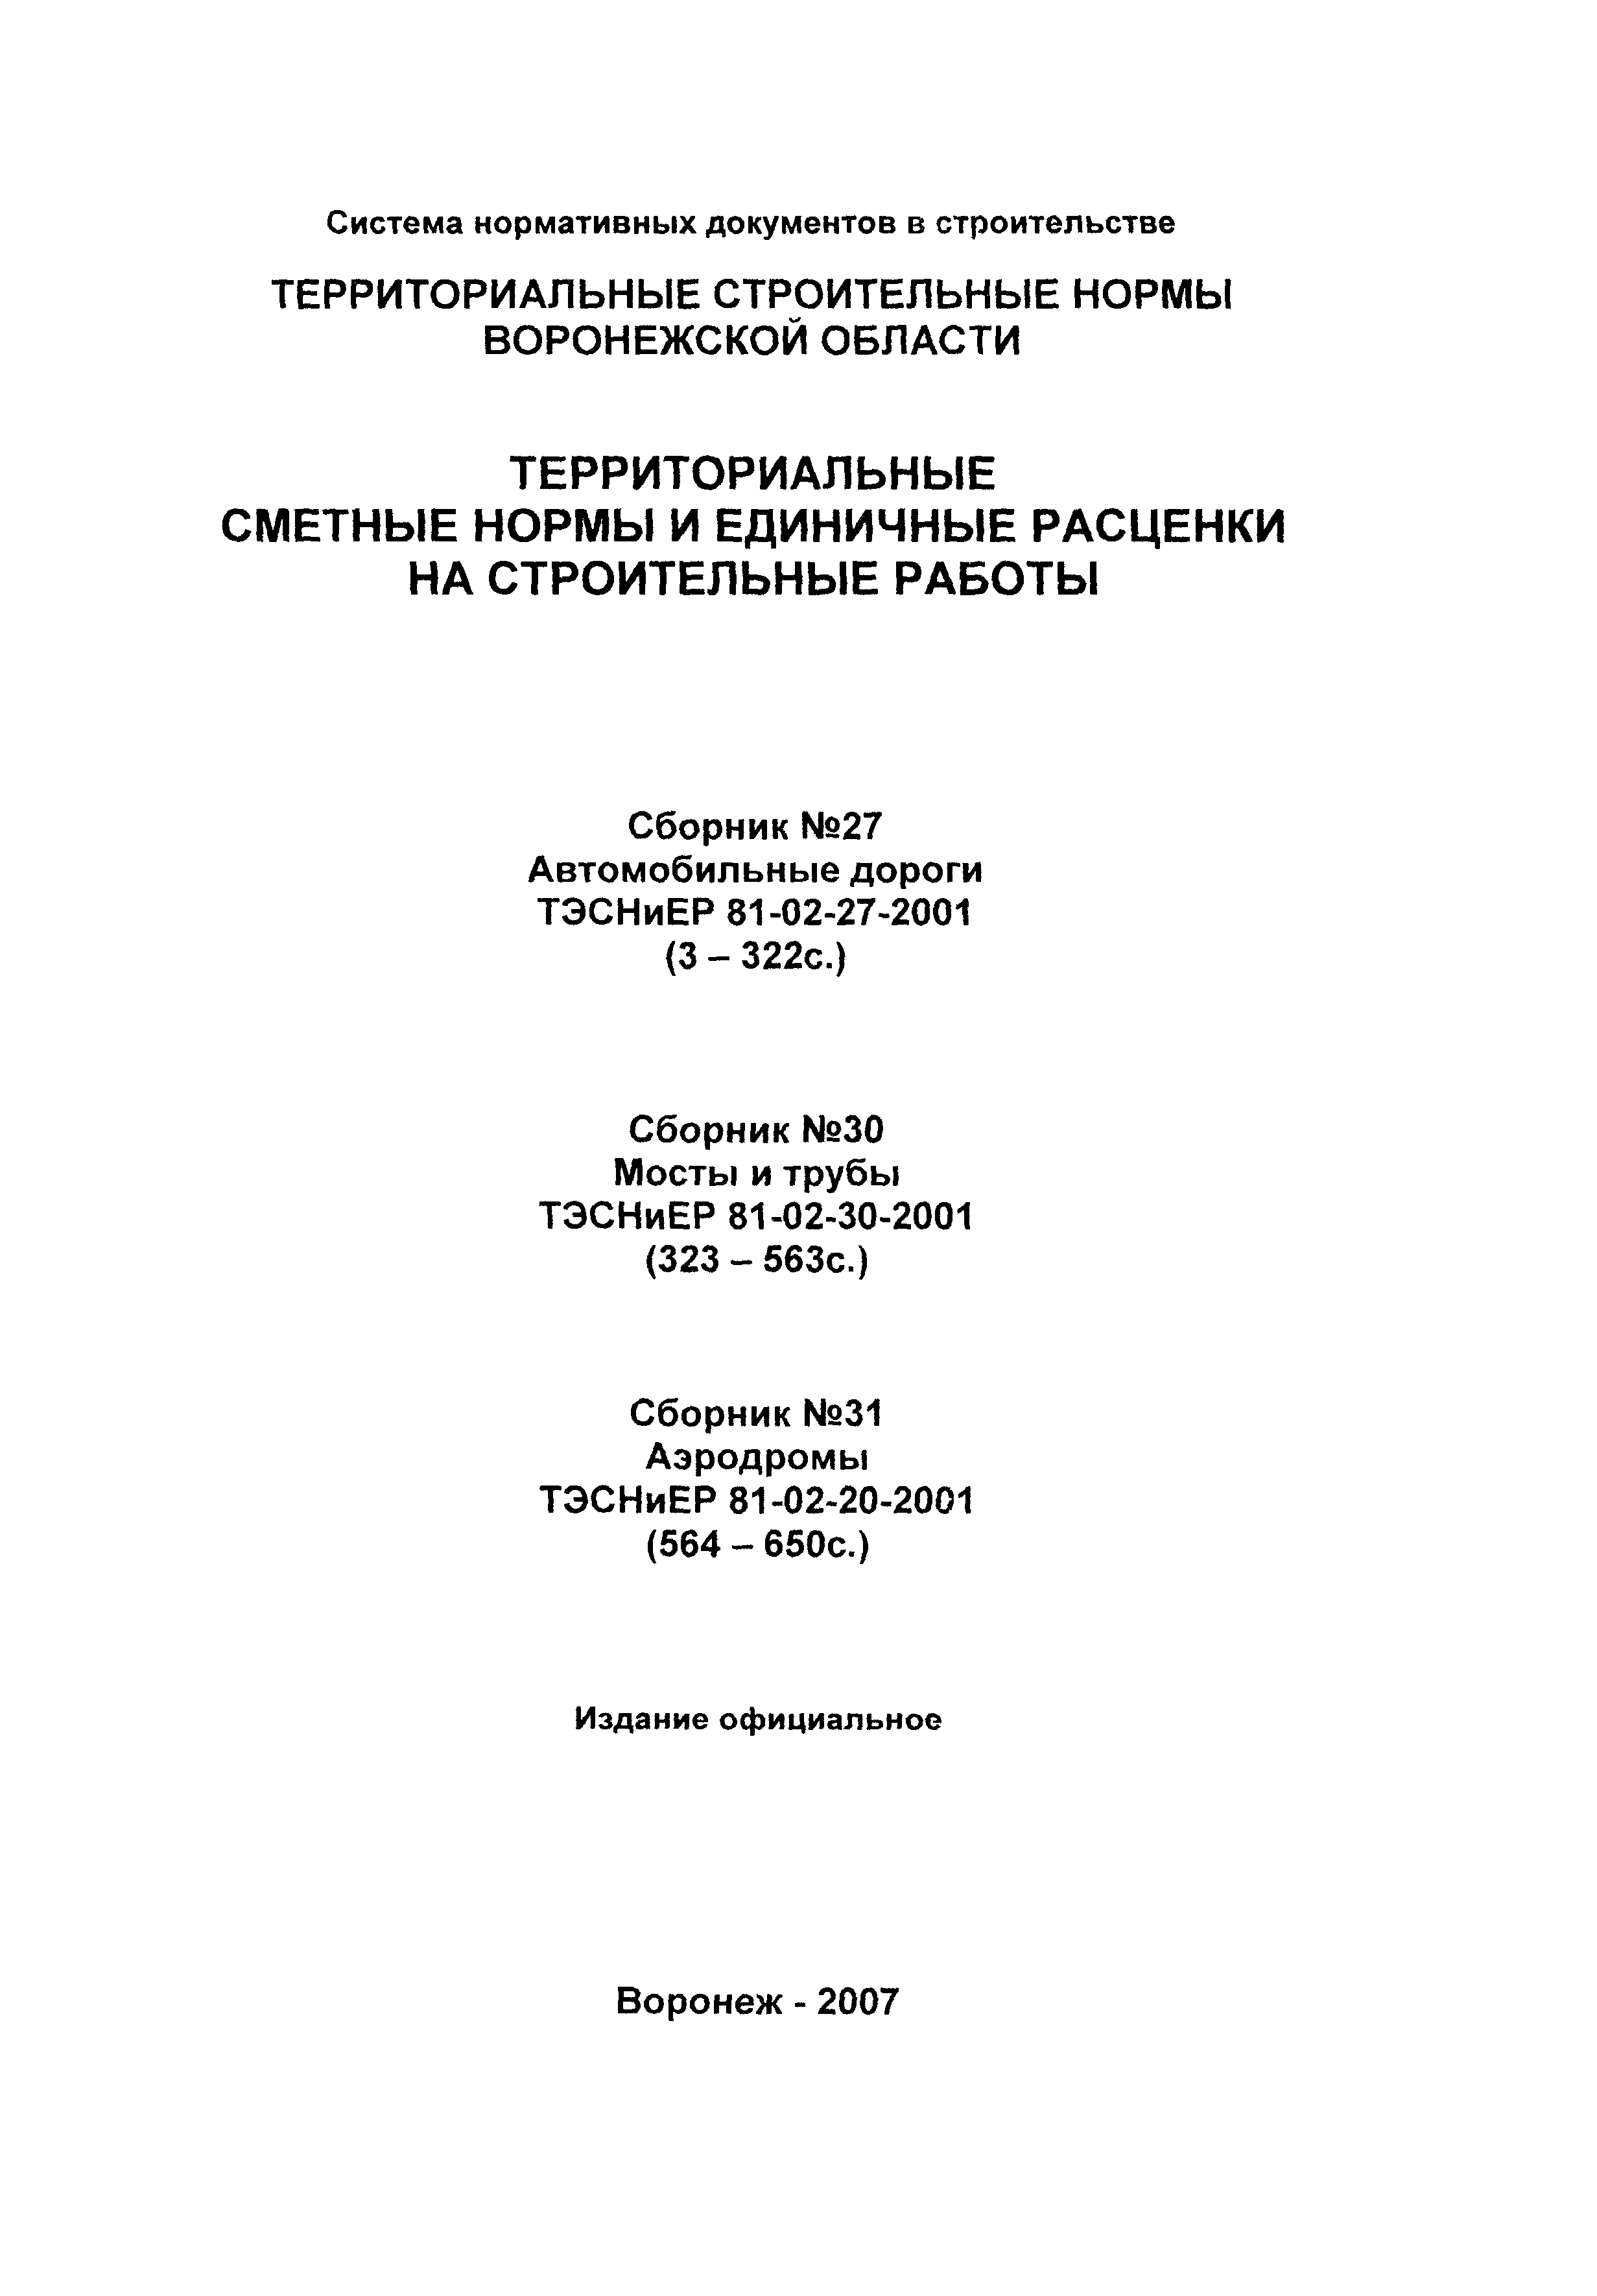 ТЭСНиЕР Воронежской области 81-02-31-2001